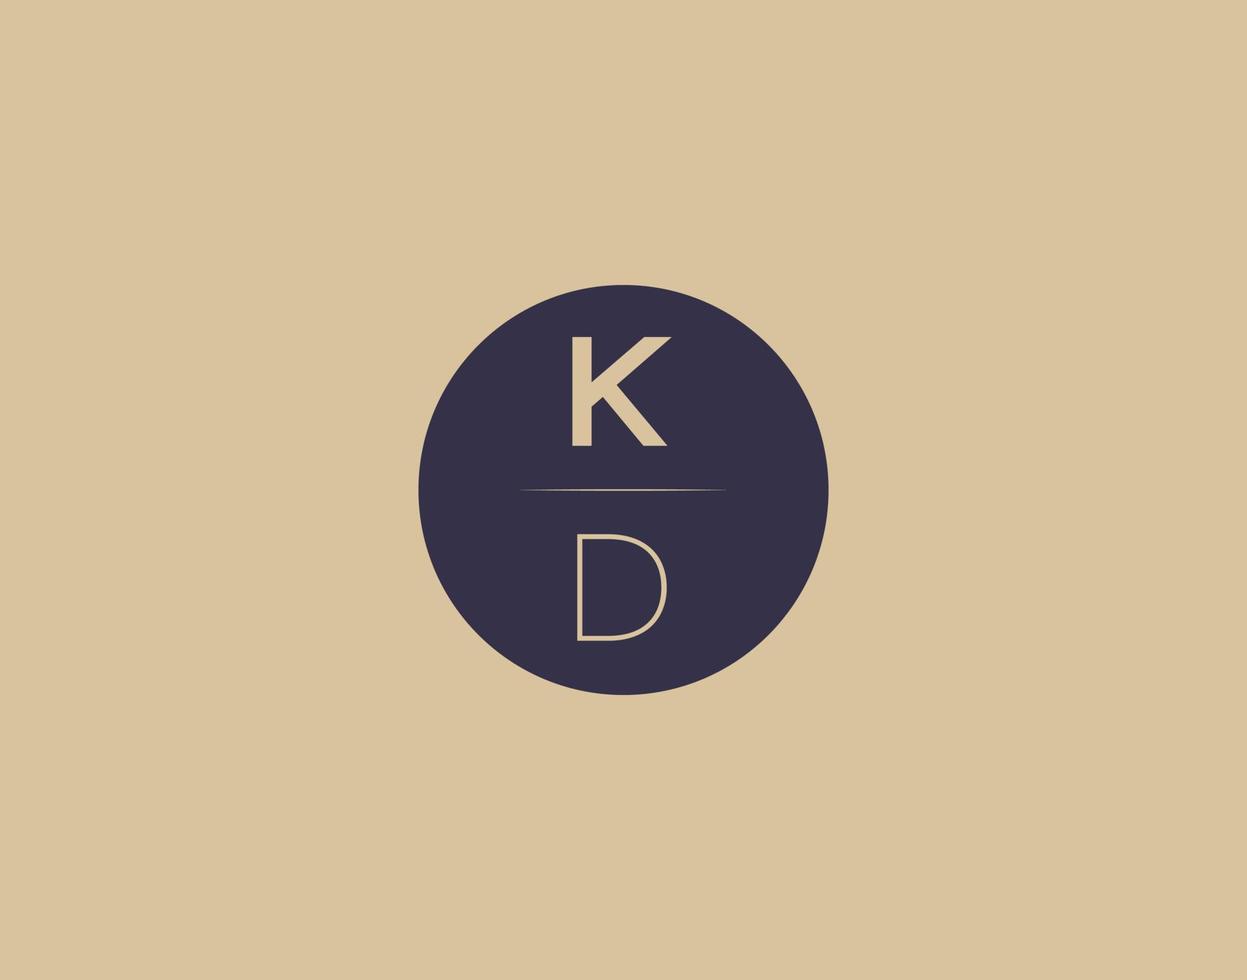 kd-Buchstabe moderne elegante Logo-Design-Vektorbilder vektor